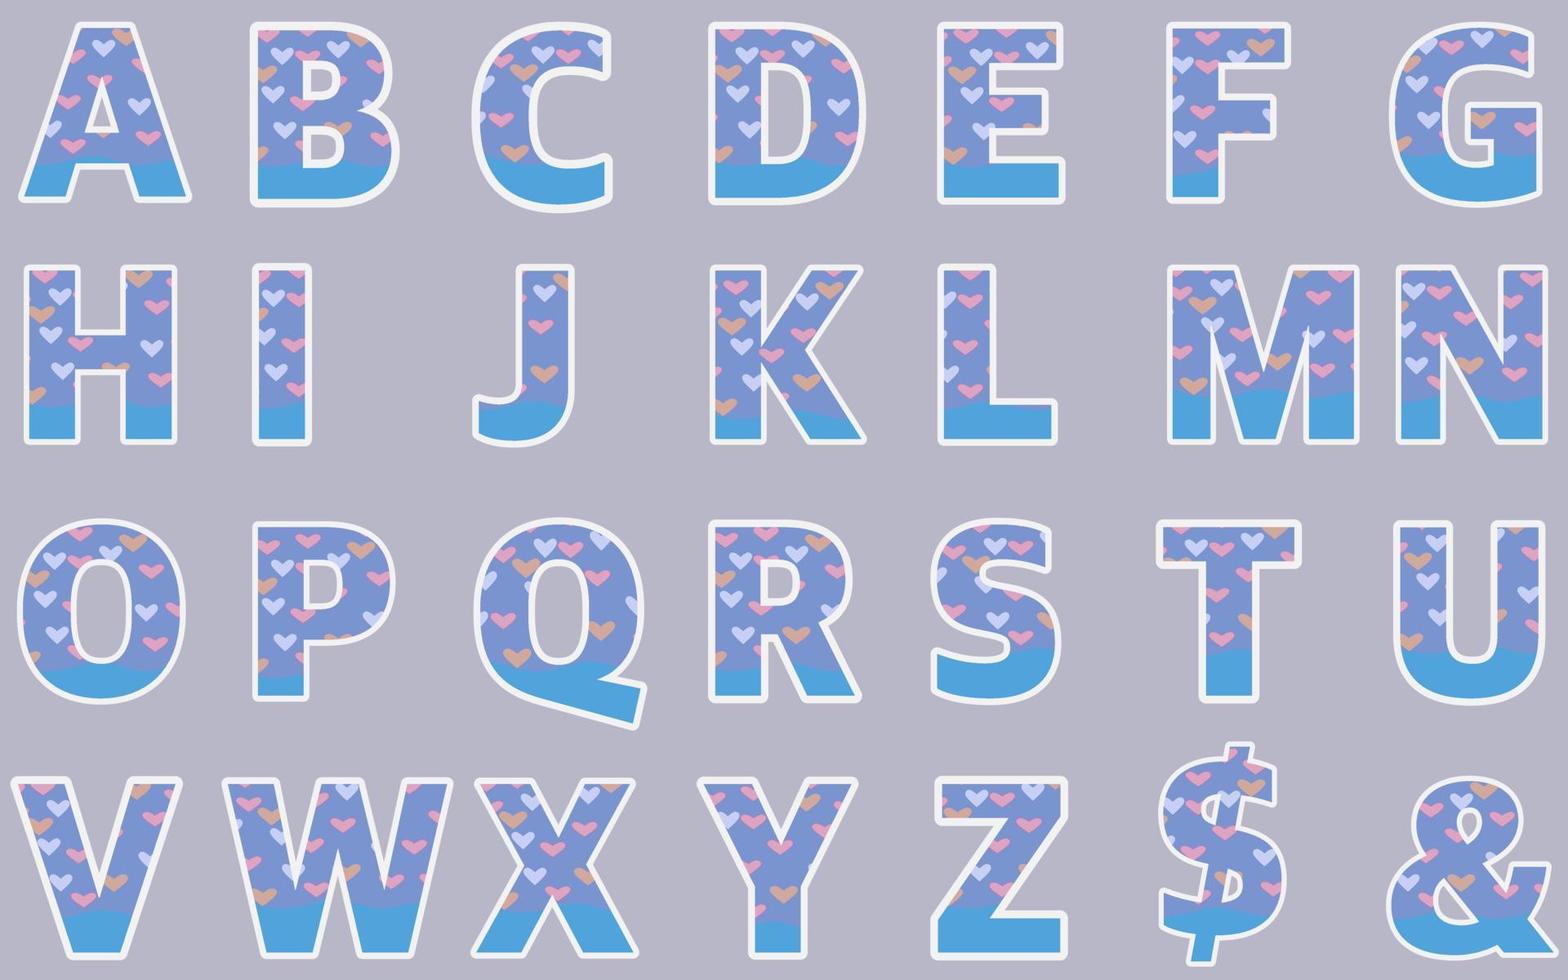 ABC alphabet Love heart blue pink color font vector set capital English letters